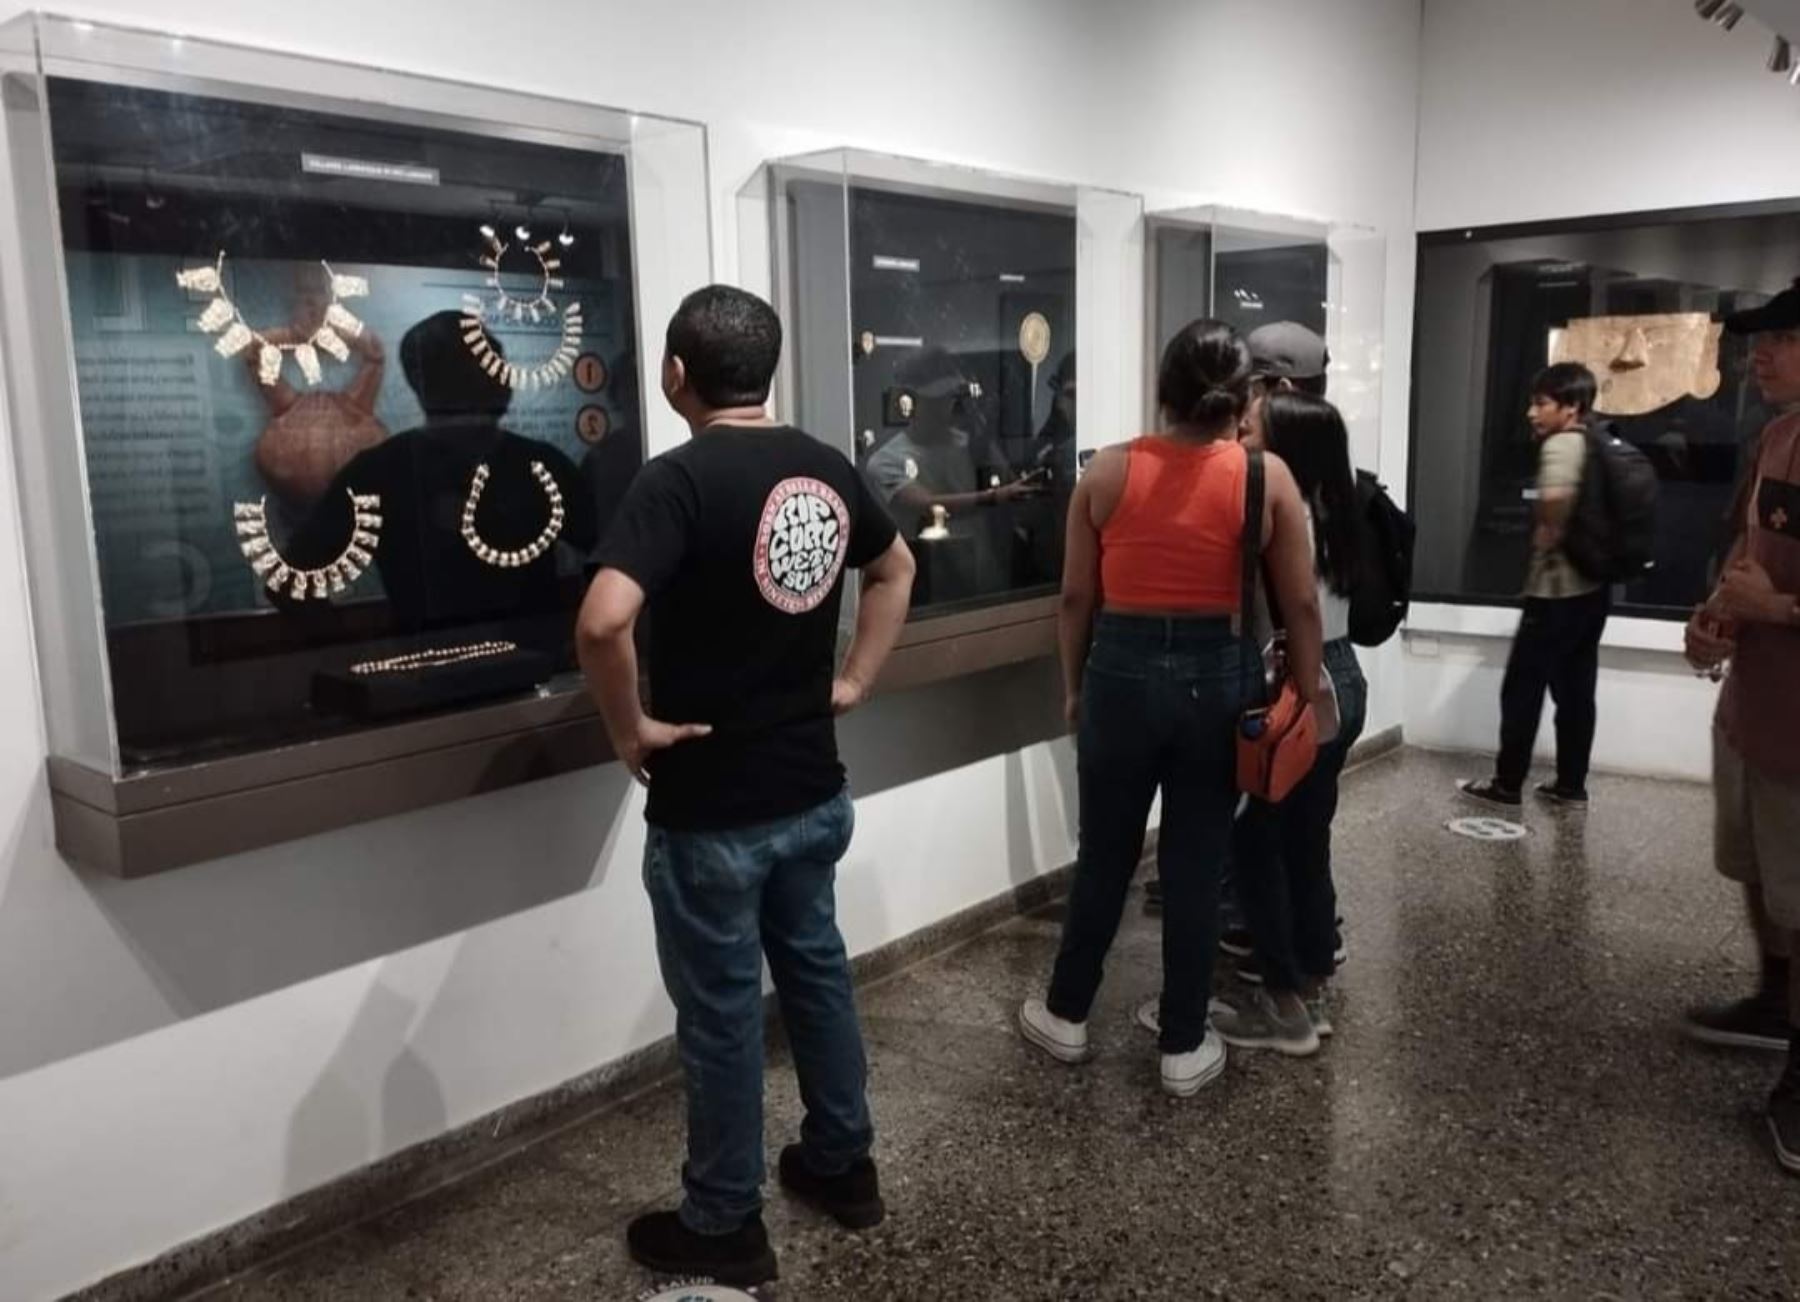 Más de 4,500 visitantes disfrutaron del patrimonio cultural de Lambayeque y visitaron de forma gratuita los seis museos de esta región el domingo 4 de junio, gracias al programa Museos Abiertos. ANDINA/Difusión